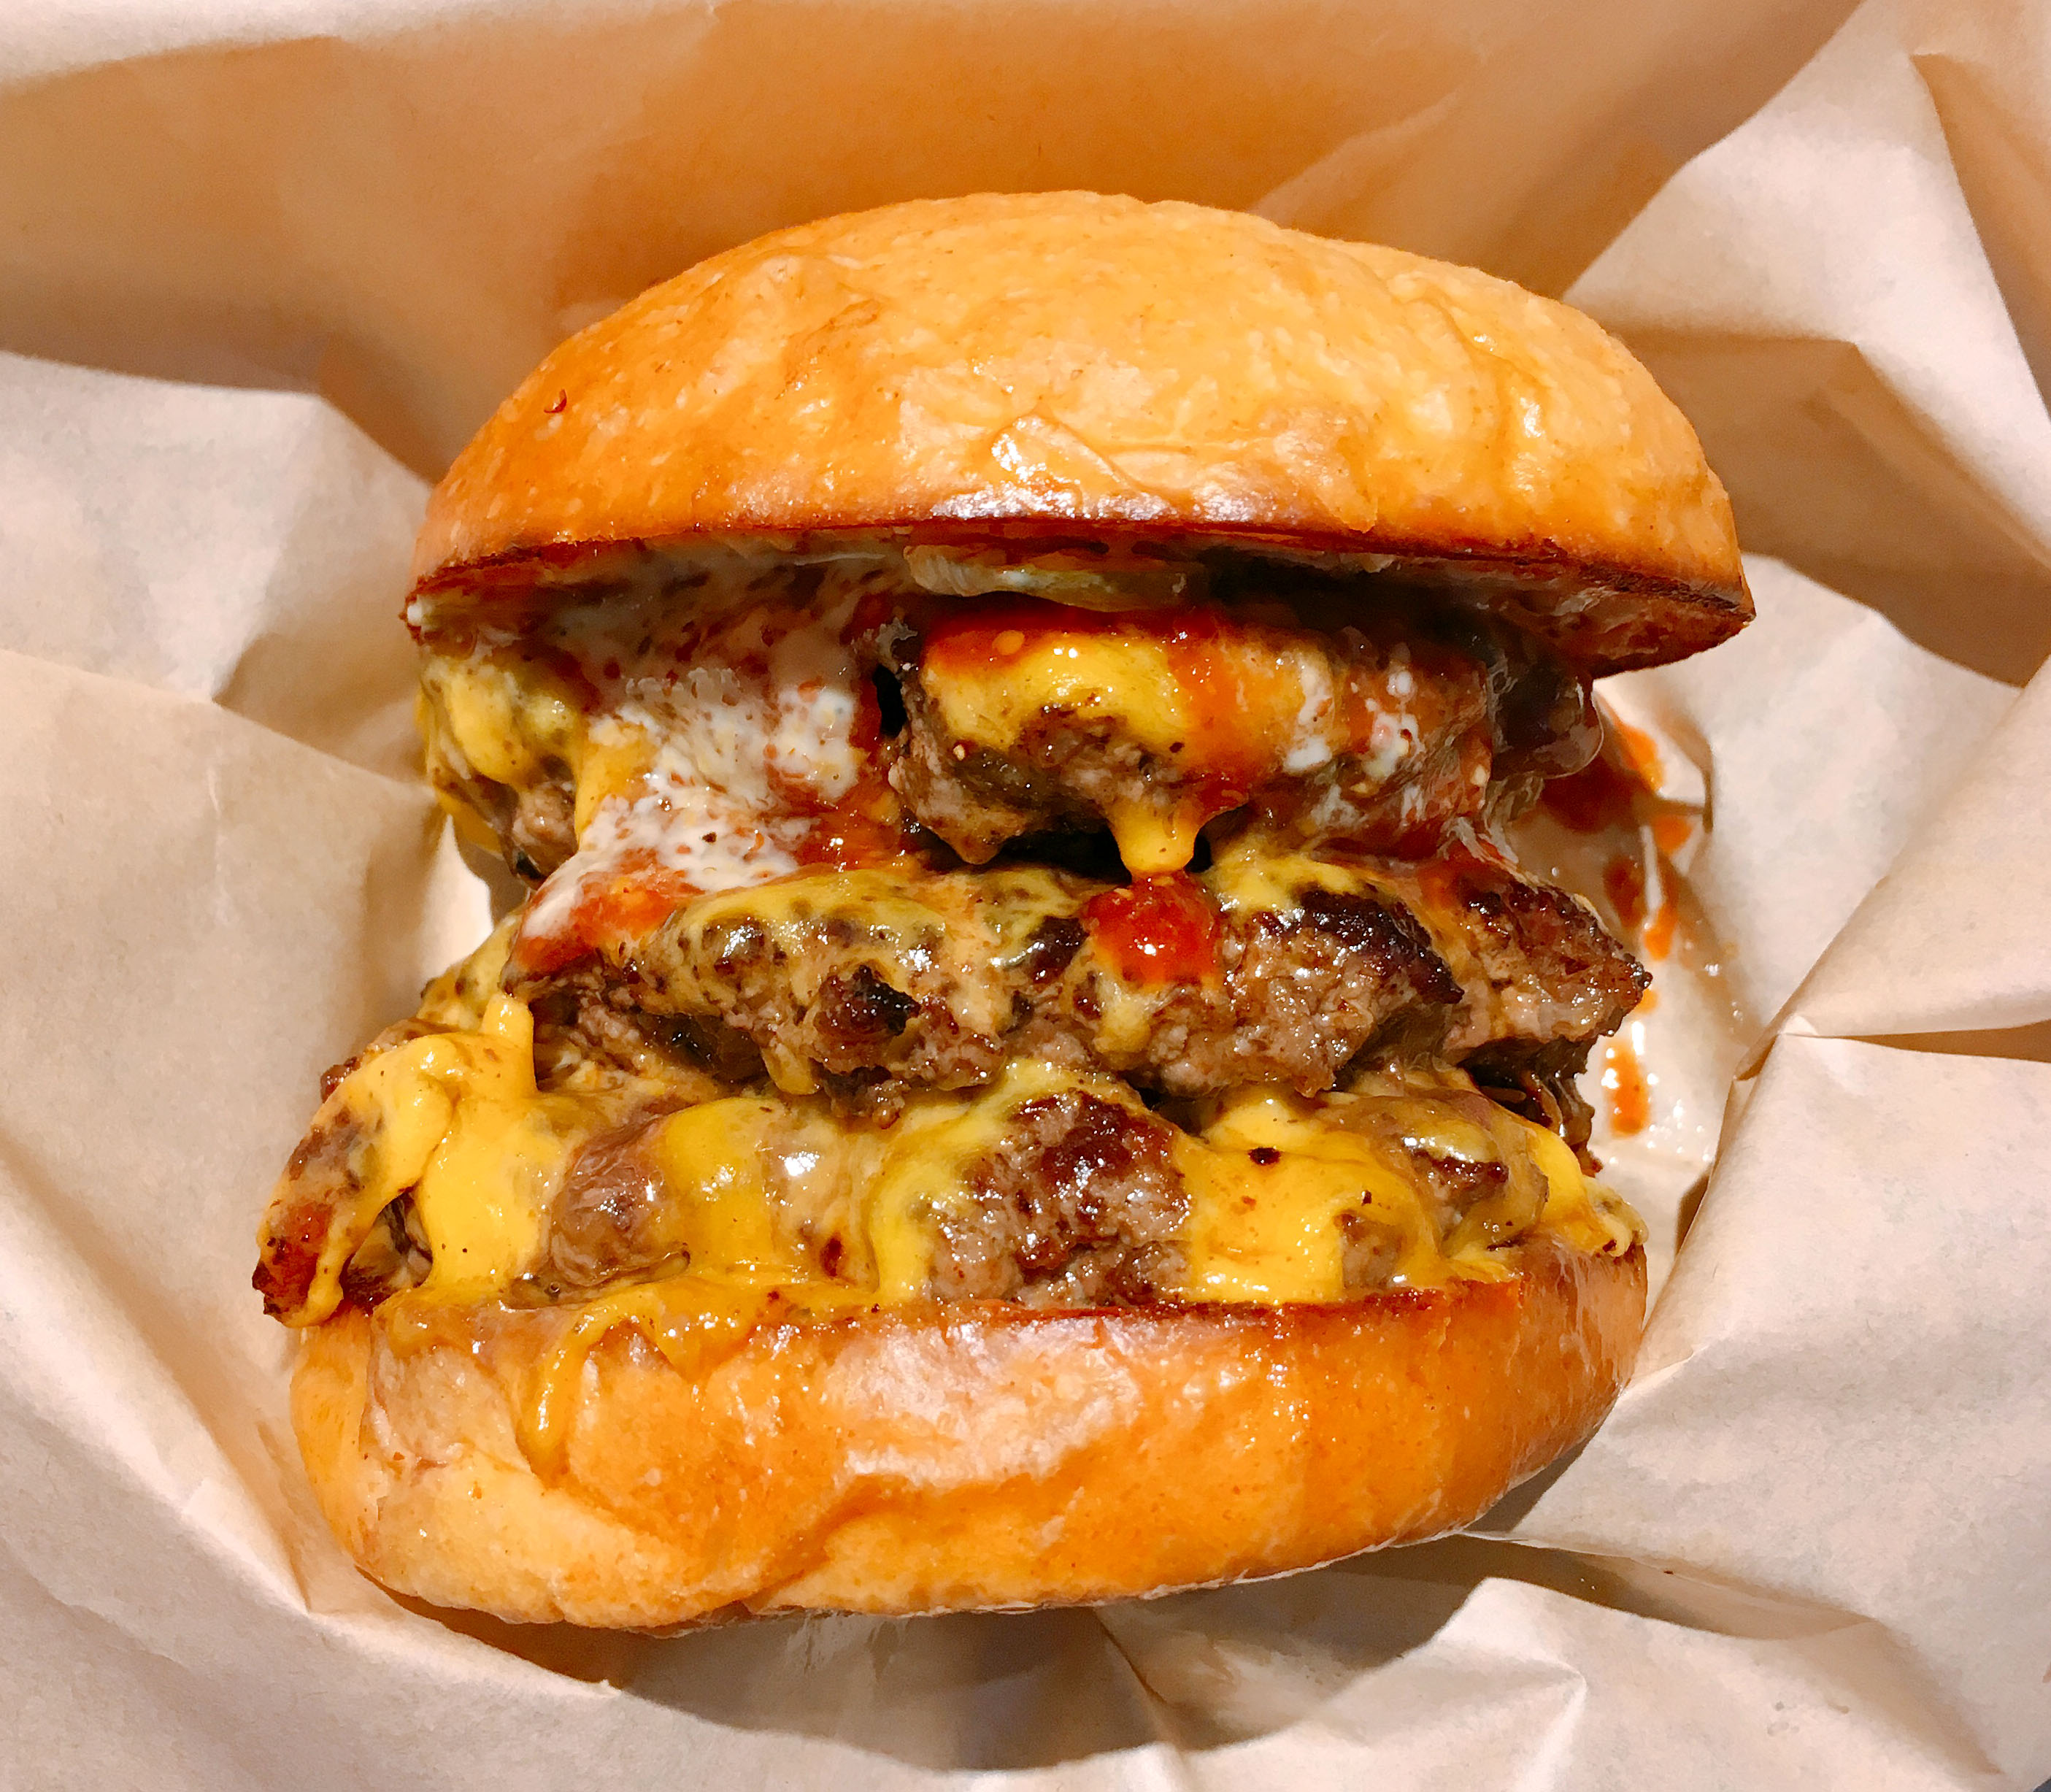 グルメ 富山発 老舗焼肉店が営む Shogun Burger のトリプルチーズバーガーが凶暴すぎる ロケットニュース24